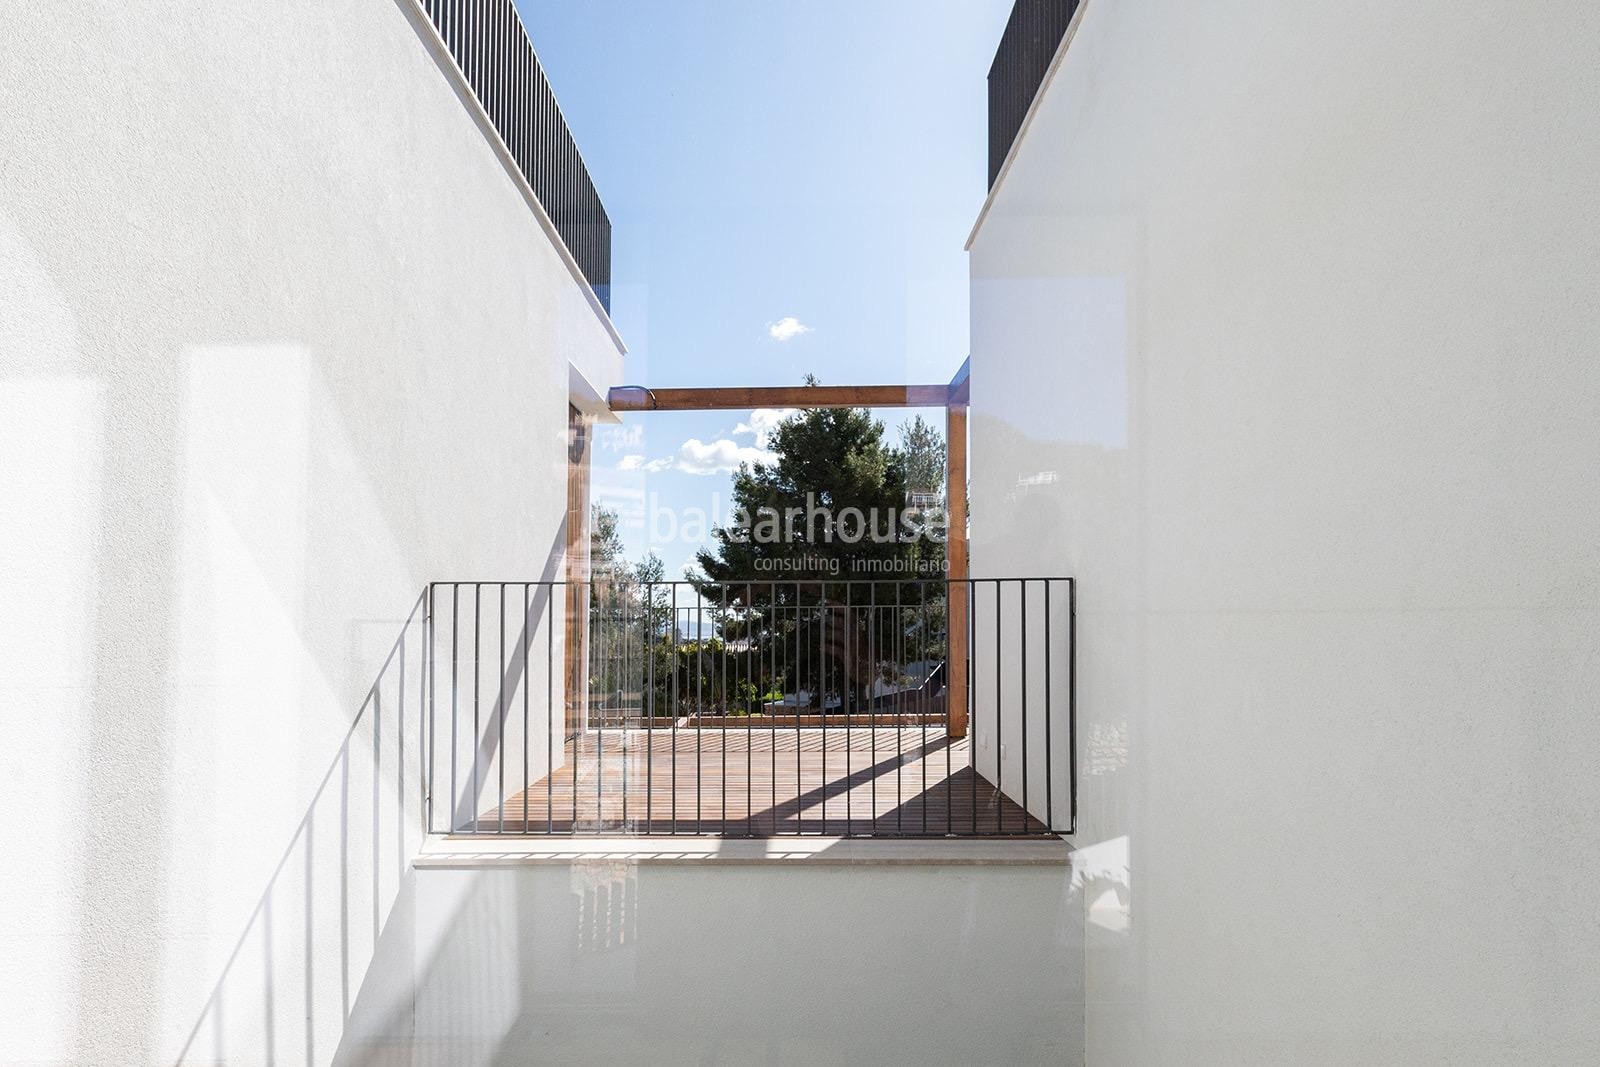 Espectacular villa nueva de diseño con altas calidades y fantásticas vistas a las colinas de Palma.